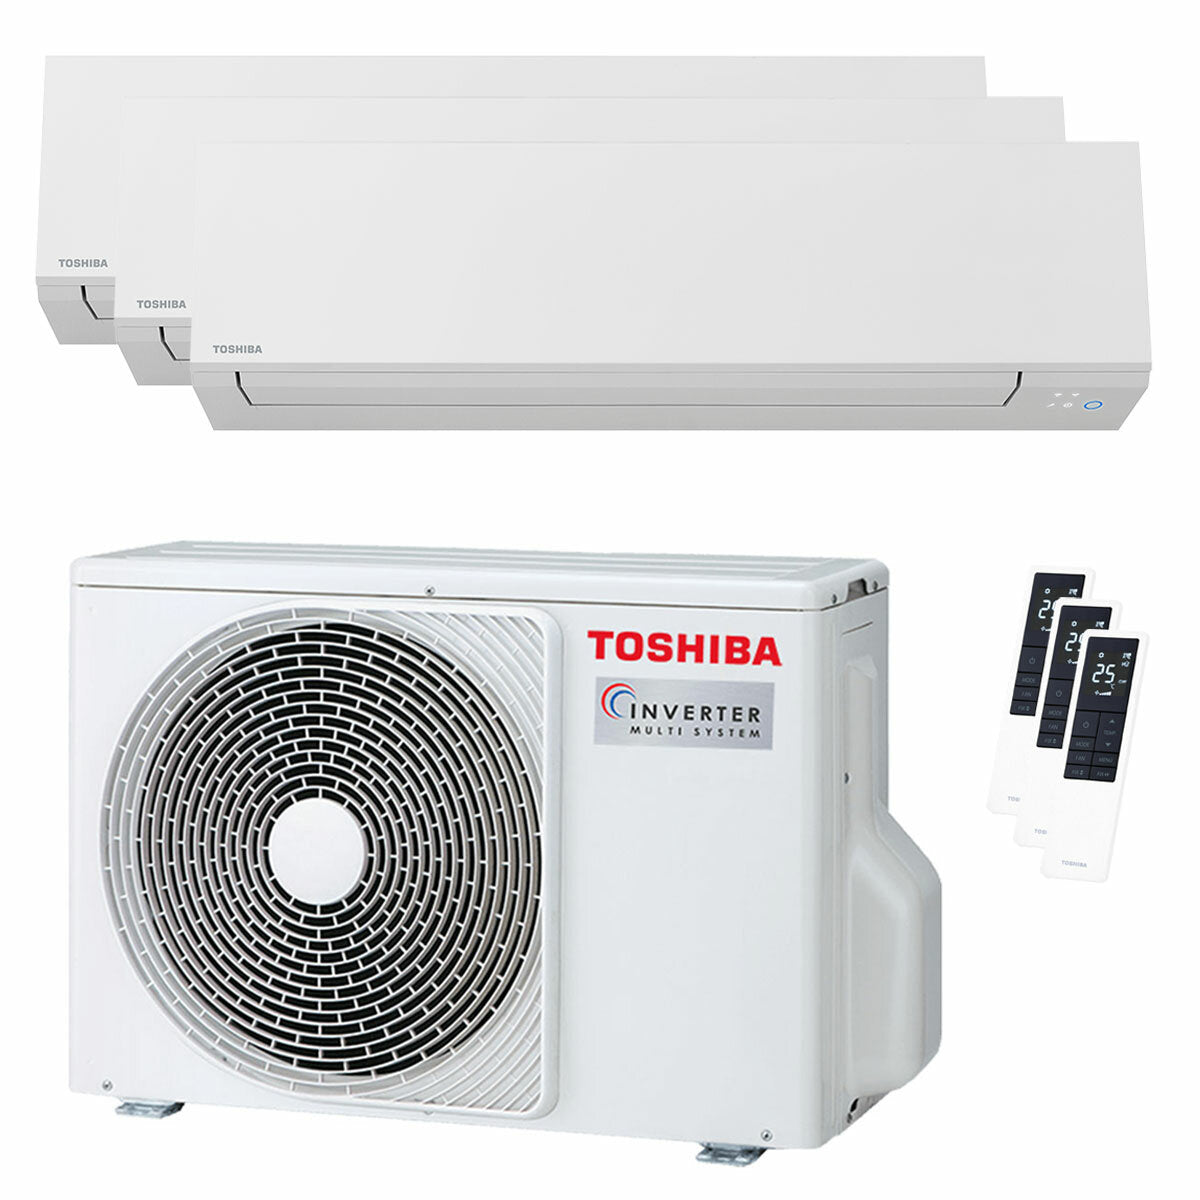 Climatiseur trial split Toshiba SHORAI Edge White 5000+7000+16000 BTU inverseur A+++ unité extérieure wifi 5,2 kW 